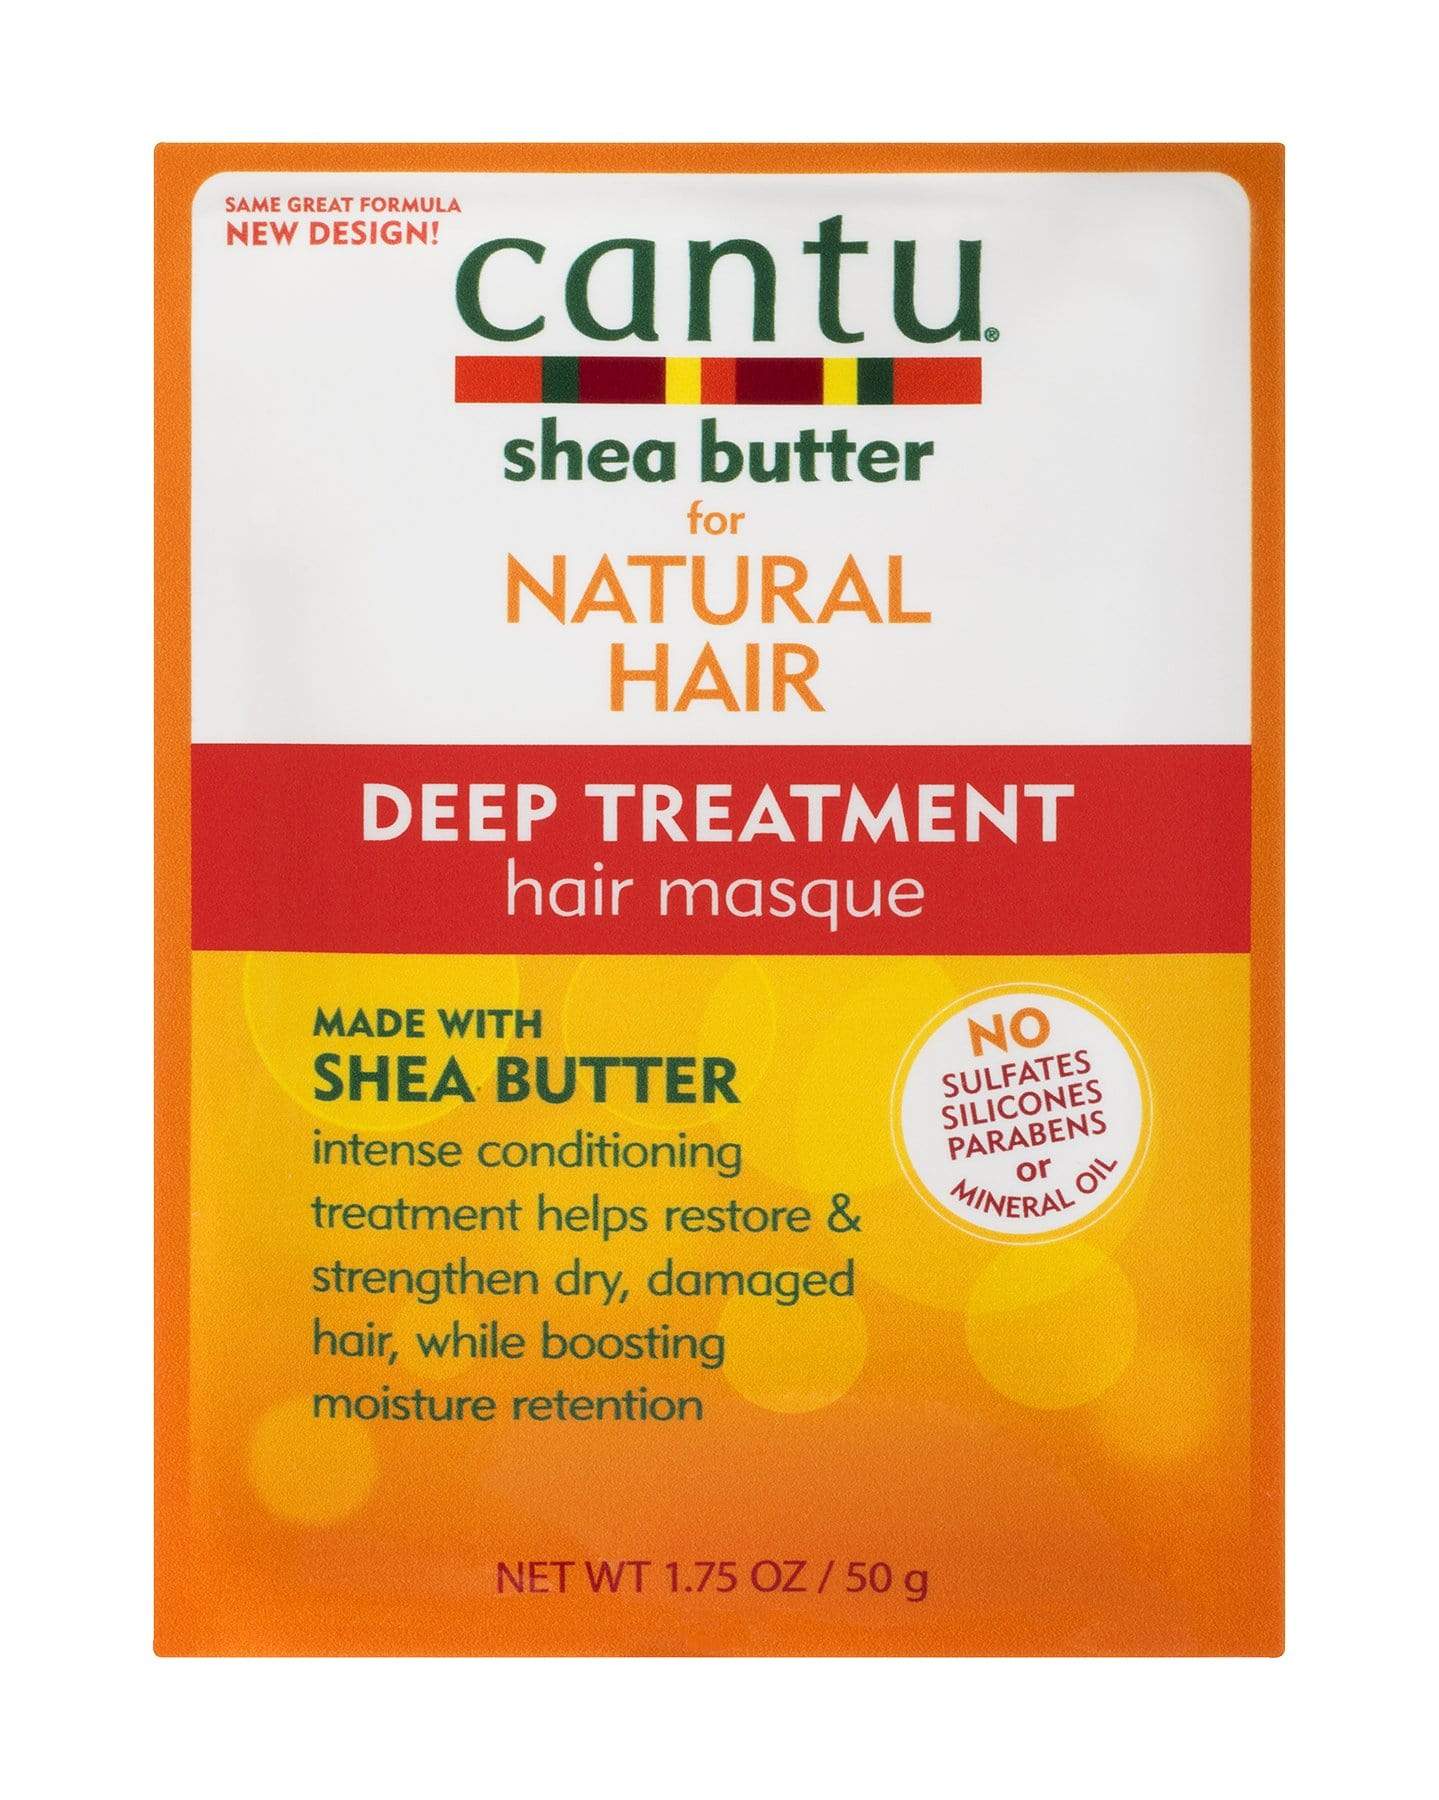 CANTU NATURAL HAIR DEEP TREATMENT HAIR MASQUE 50 G - 07632-24/6EU